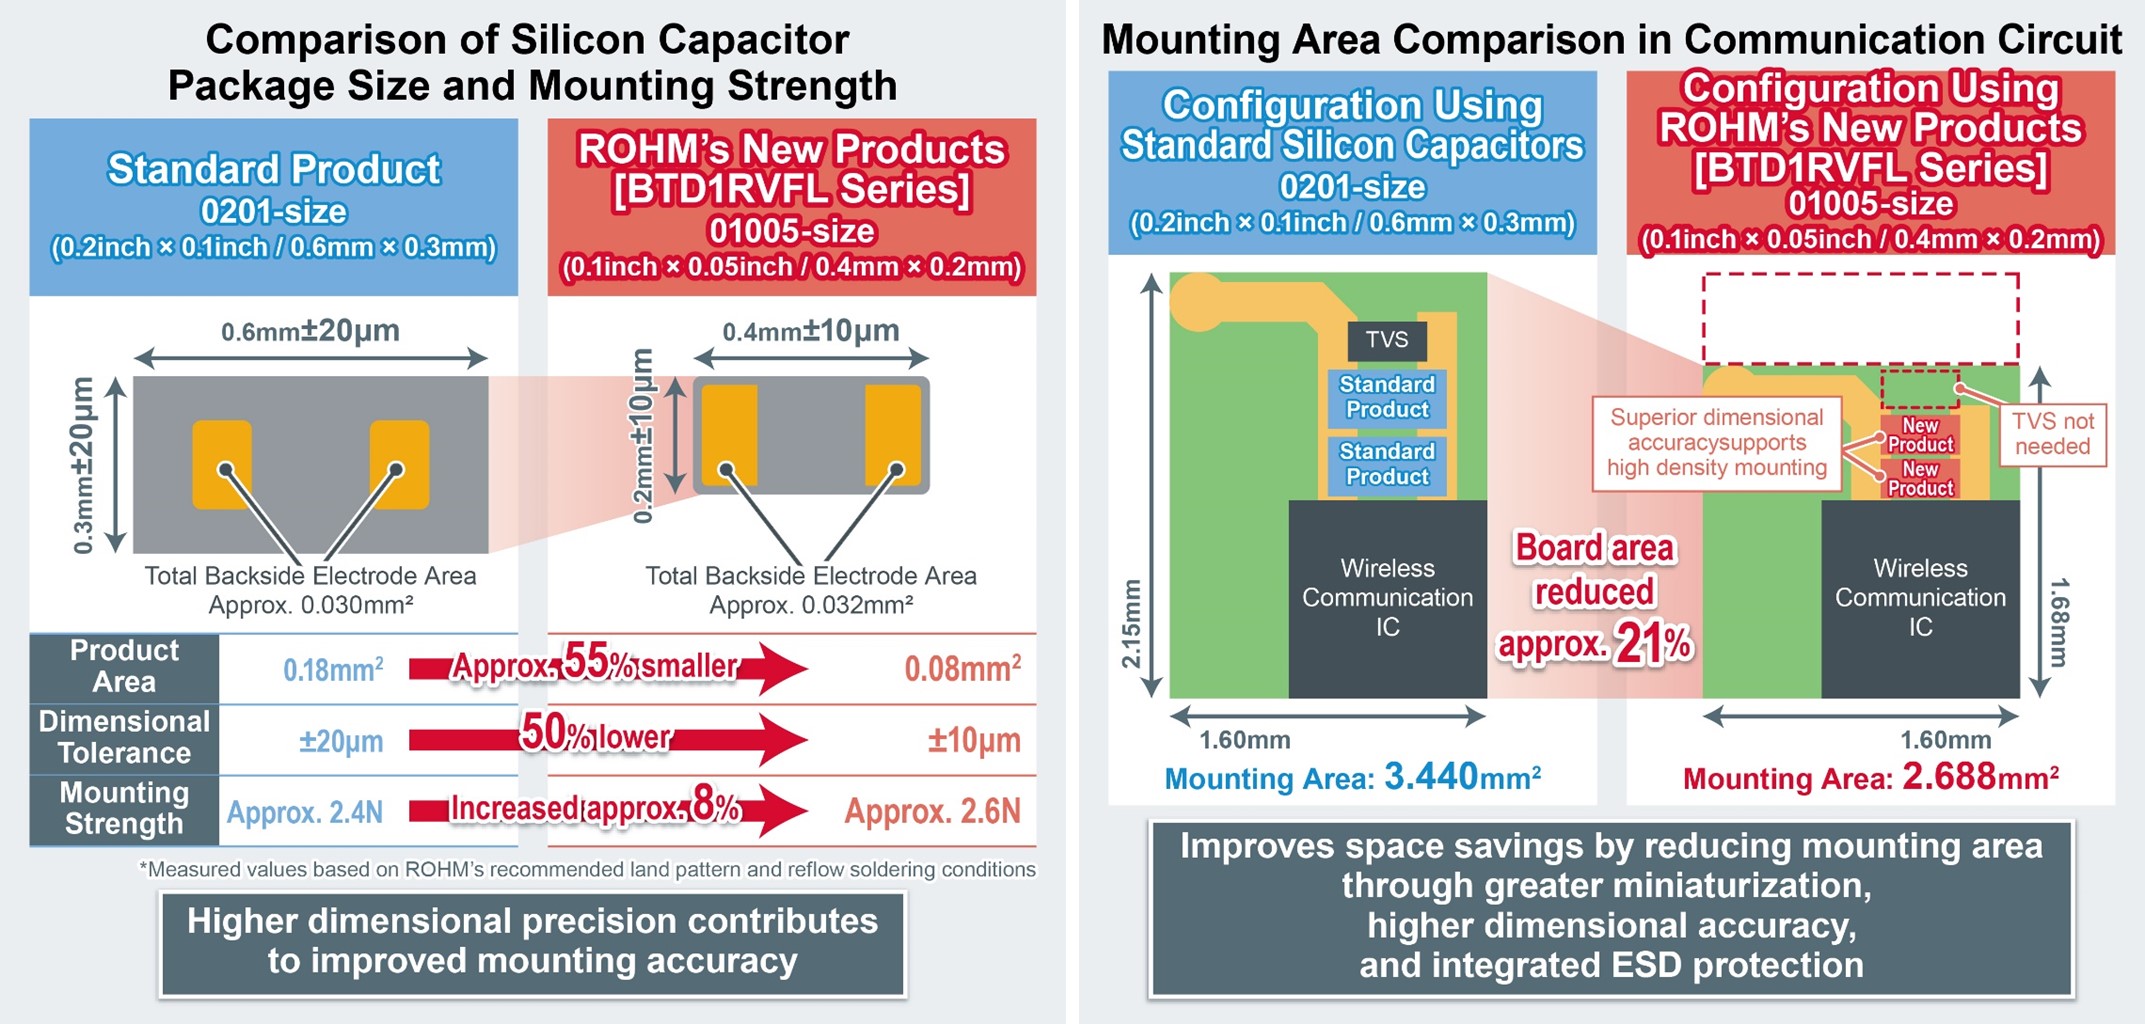 Comparison of ROHM's BTD1RVFL Series Silicon Capacitors vs. Standard Product